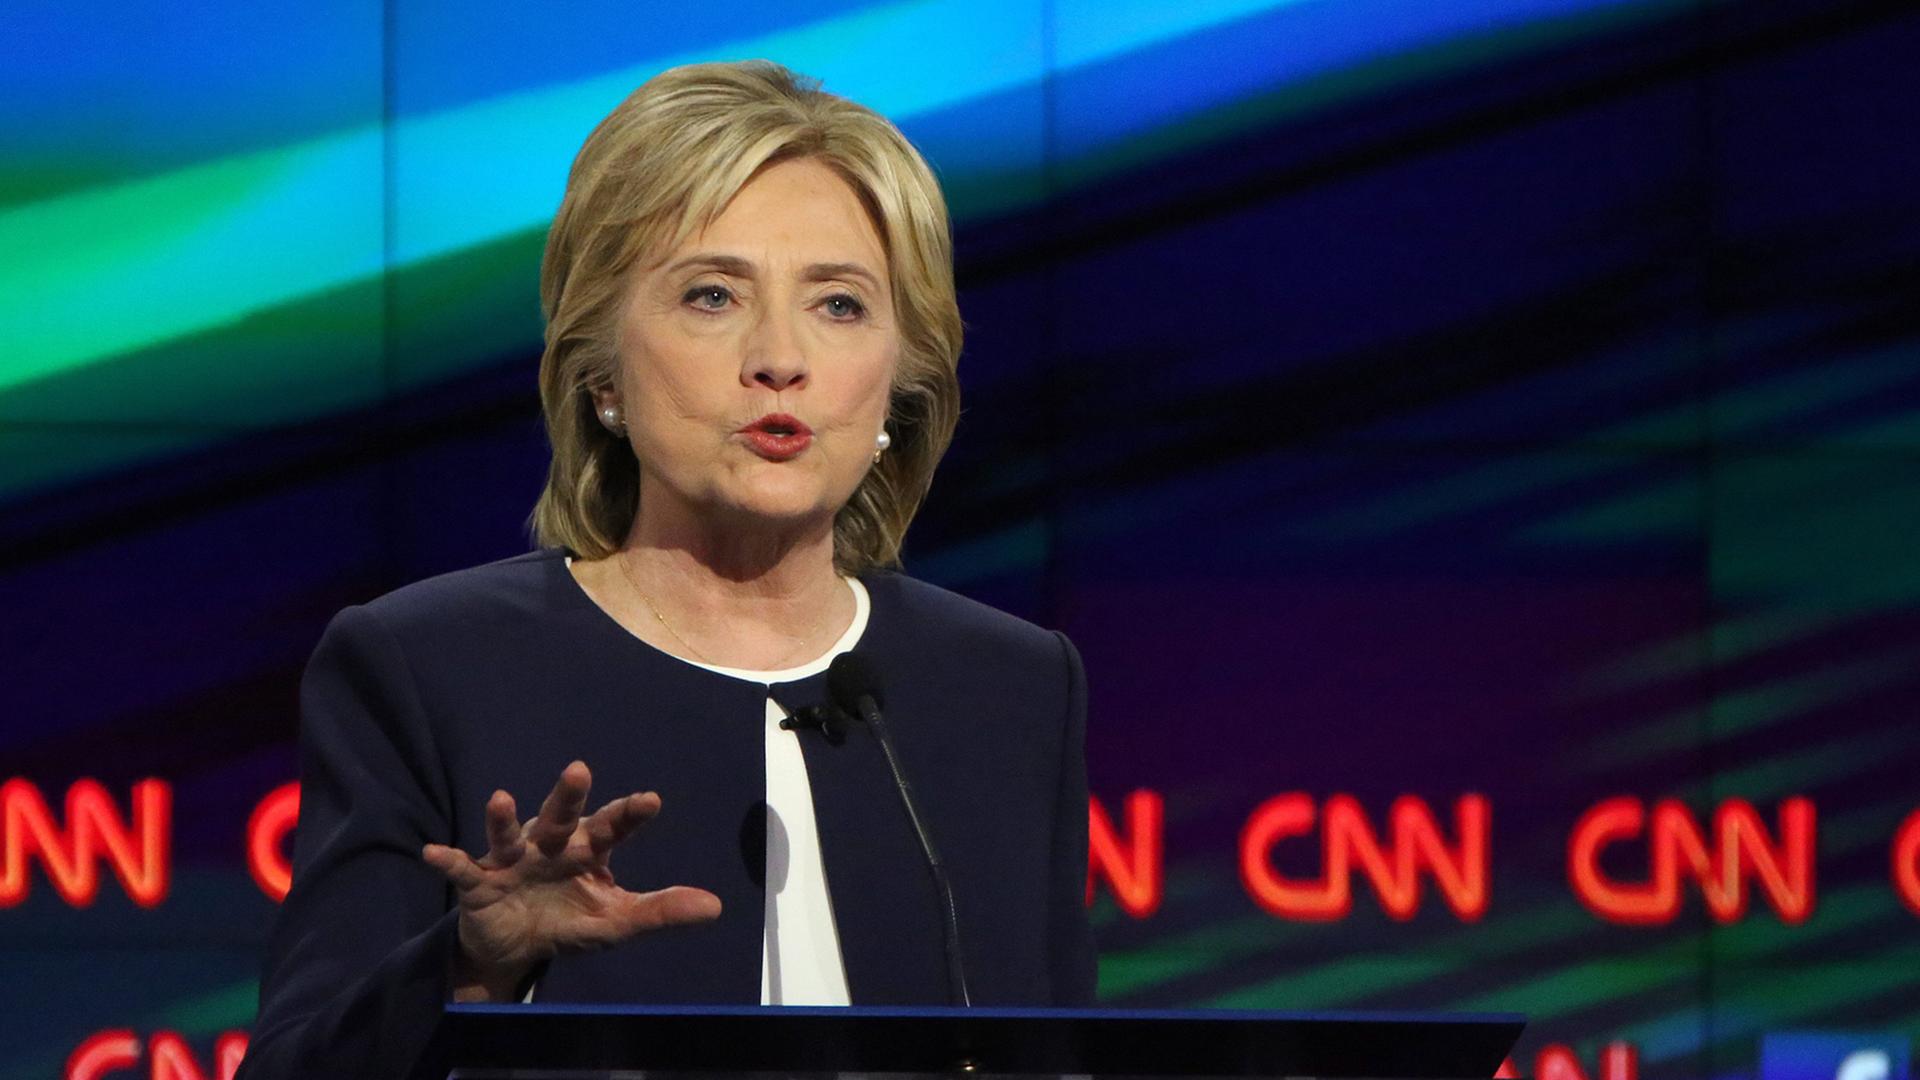 Hillary Clinton beim DV-Duell am 13. Oktober 2015.